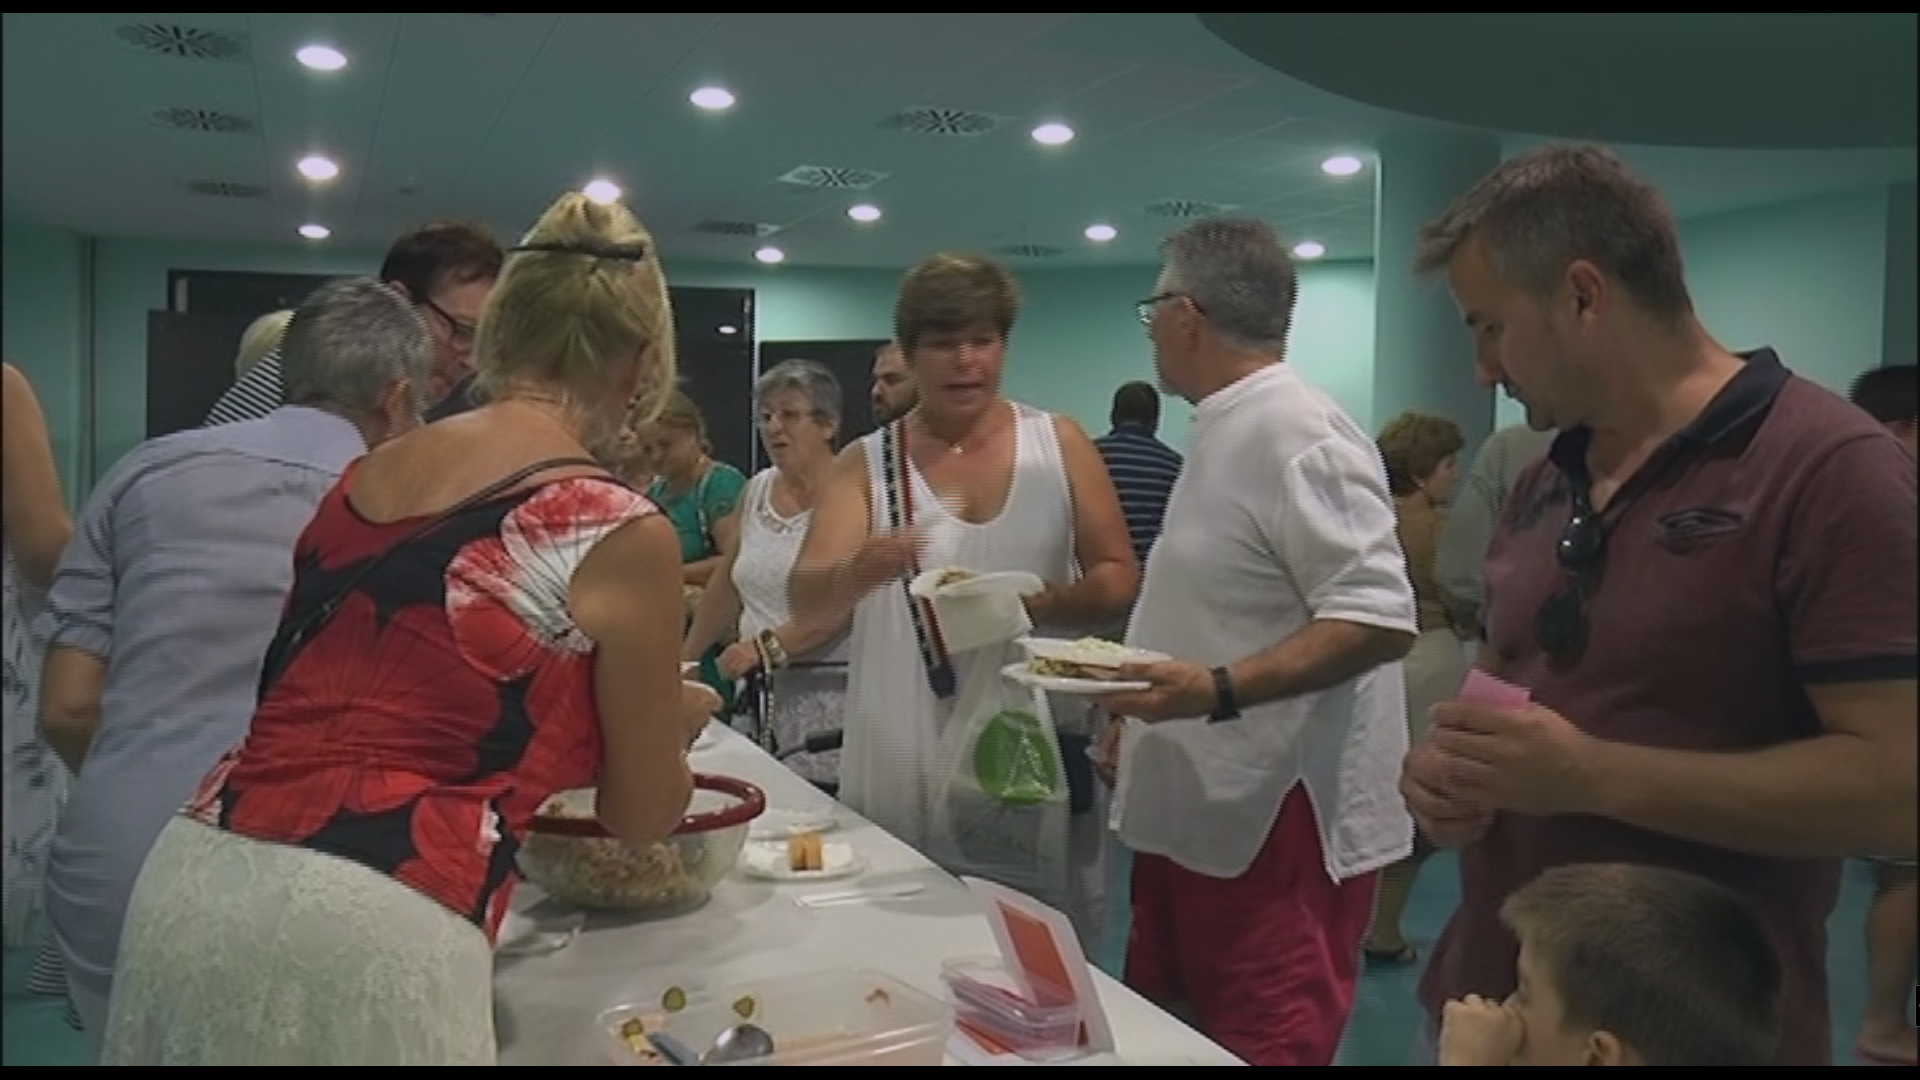 Peníscola, l'Associació Amics de la Cultura Espanyola celebra la Demostració de Cuina Internacional